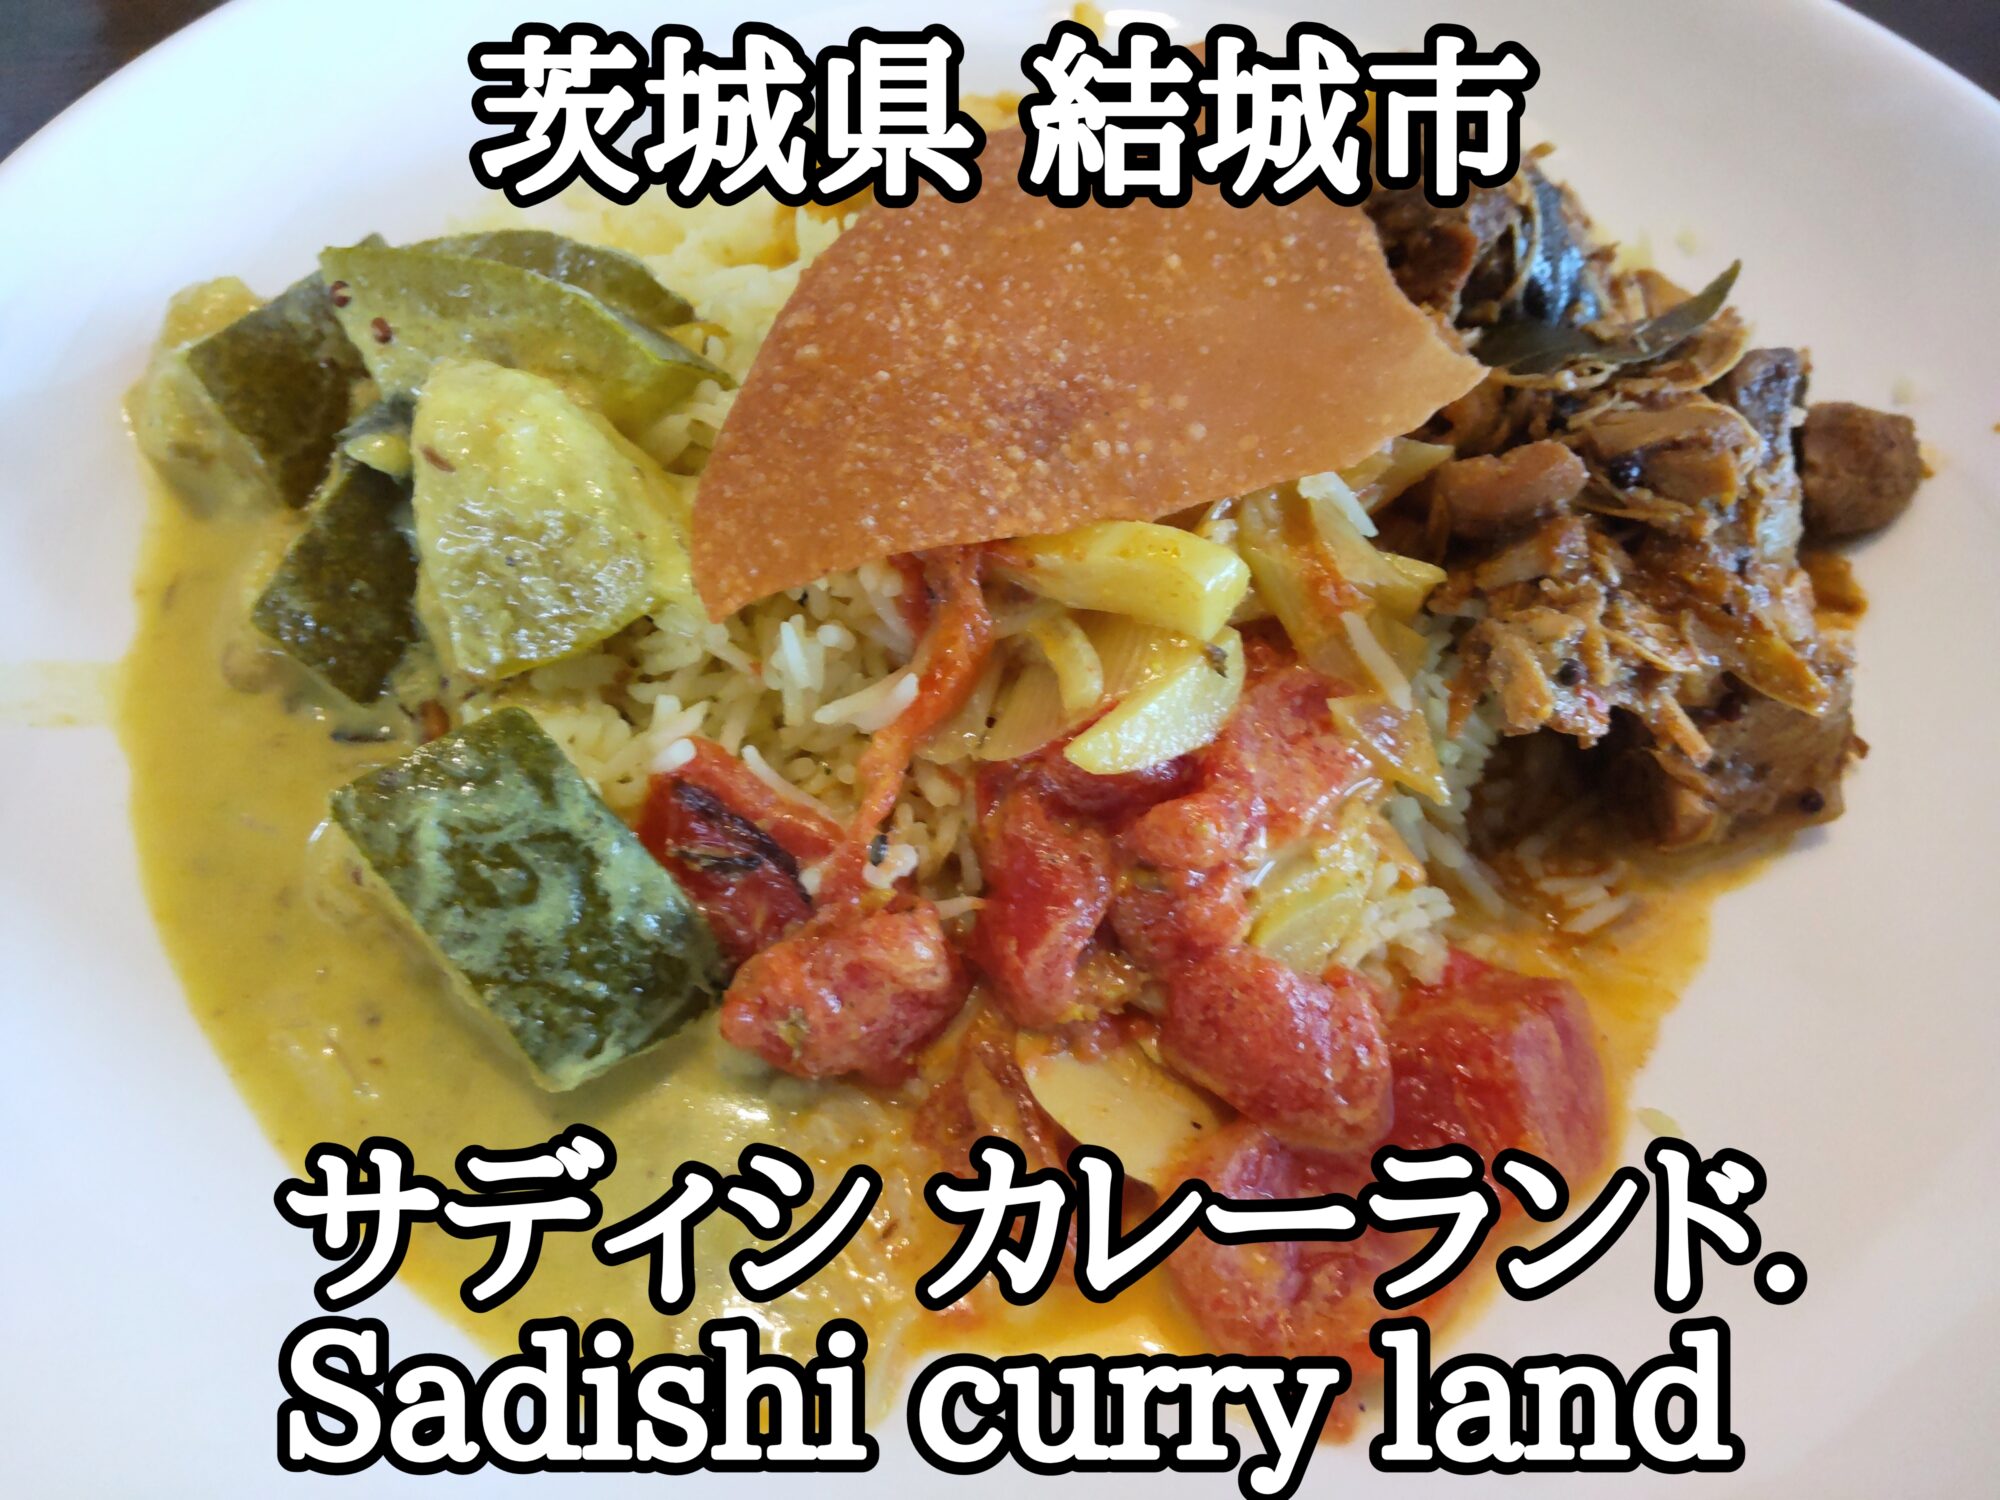 【茨城県】【結城市】「サディシ カレーランド. Sadishi curry land」新店のスリランカ料理ビュッフェが平日1000円